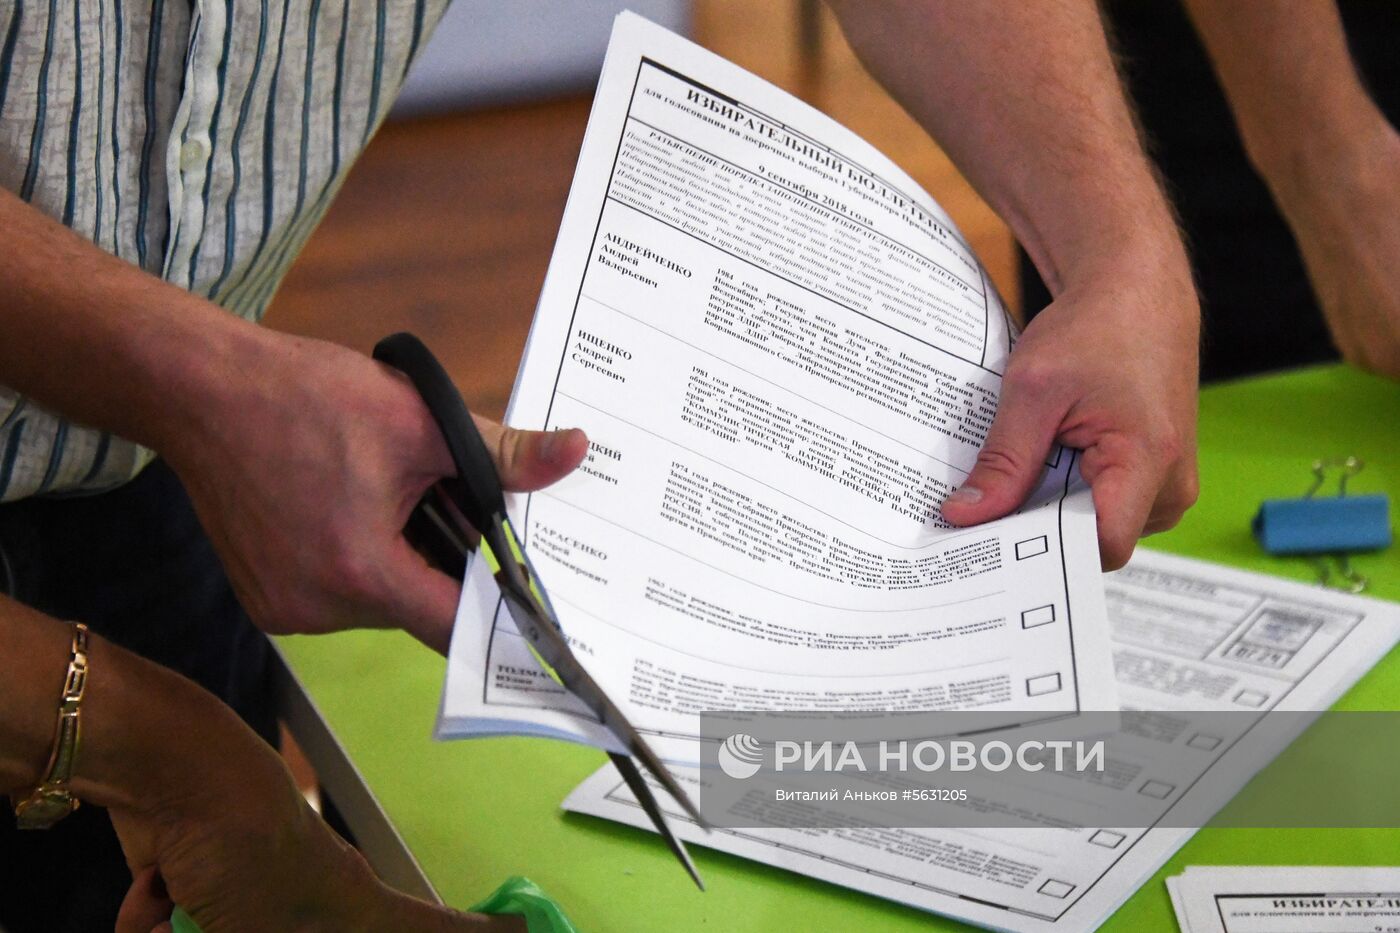 Подсчет голосов на выборах в Единый день голосования 